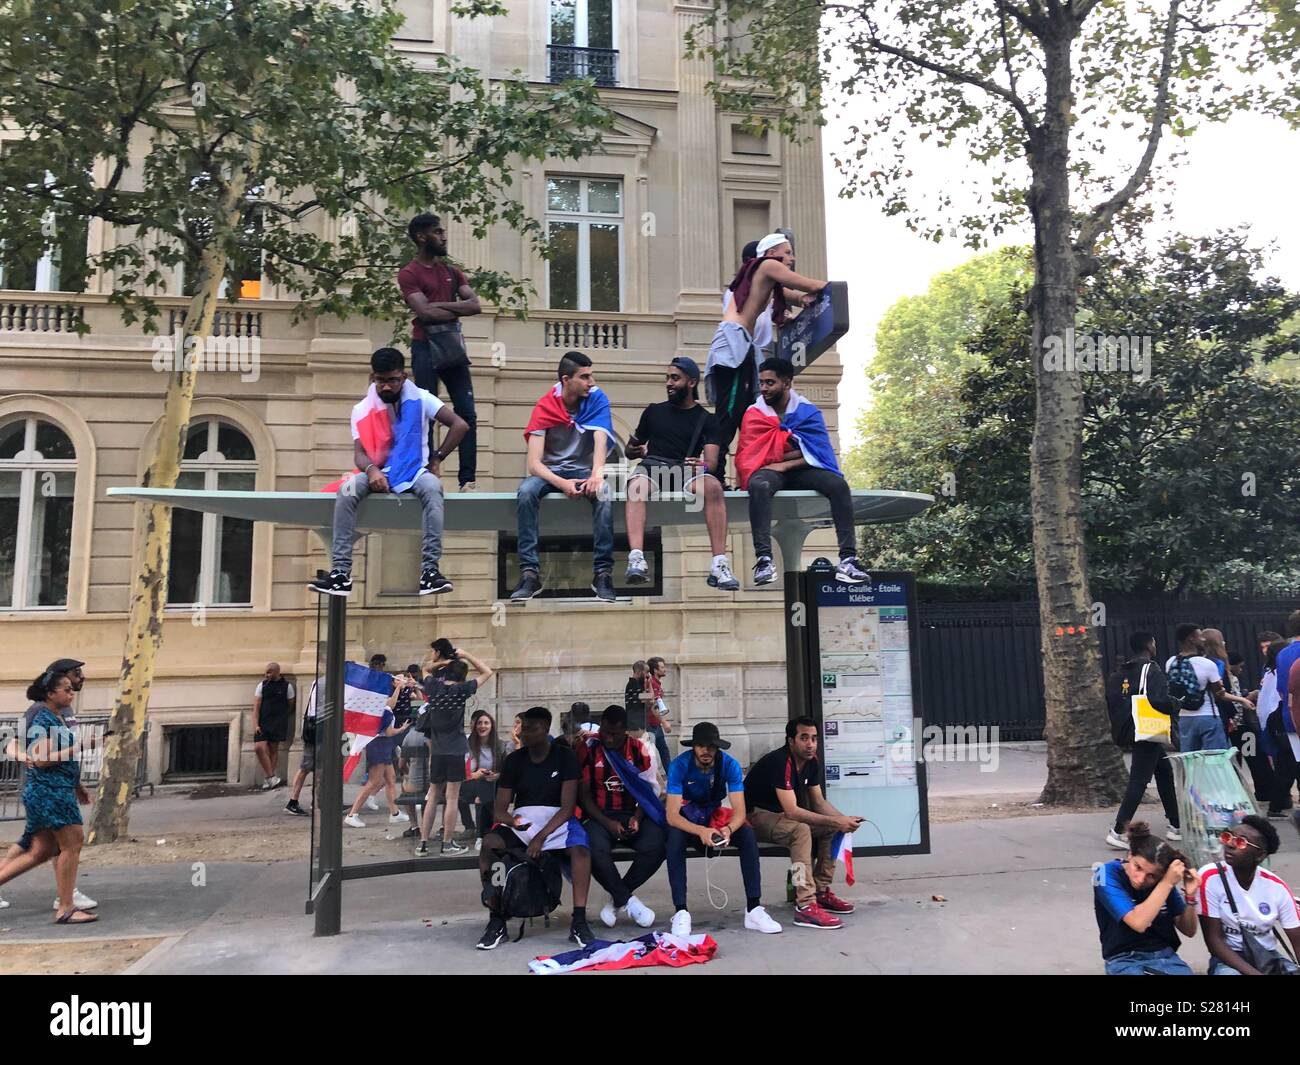 France world cup celebration Stock Photo